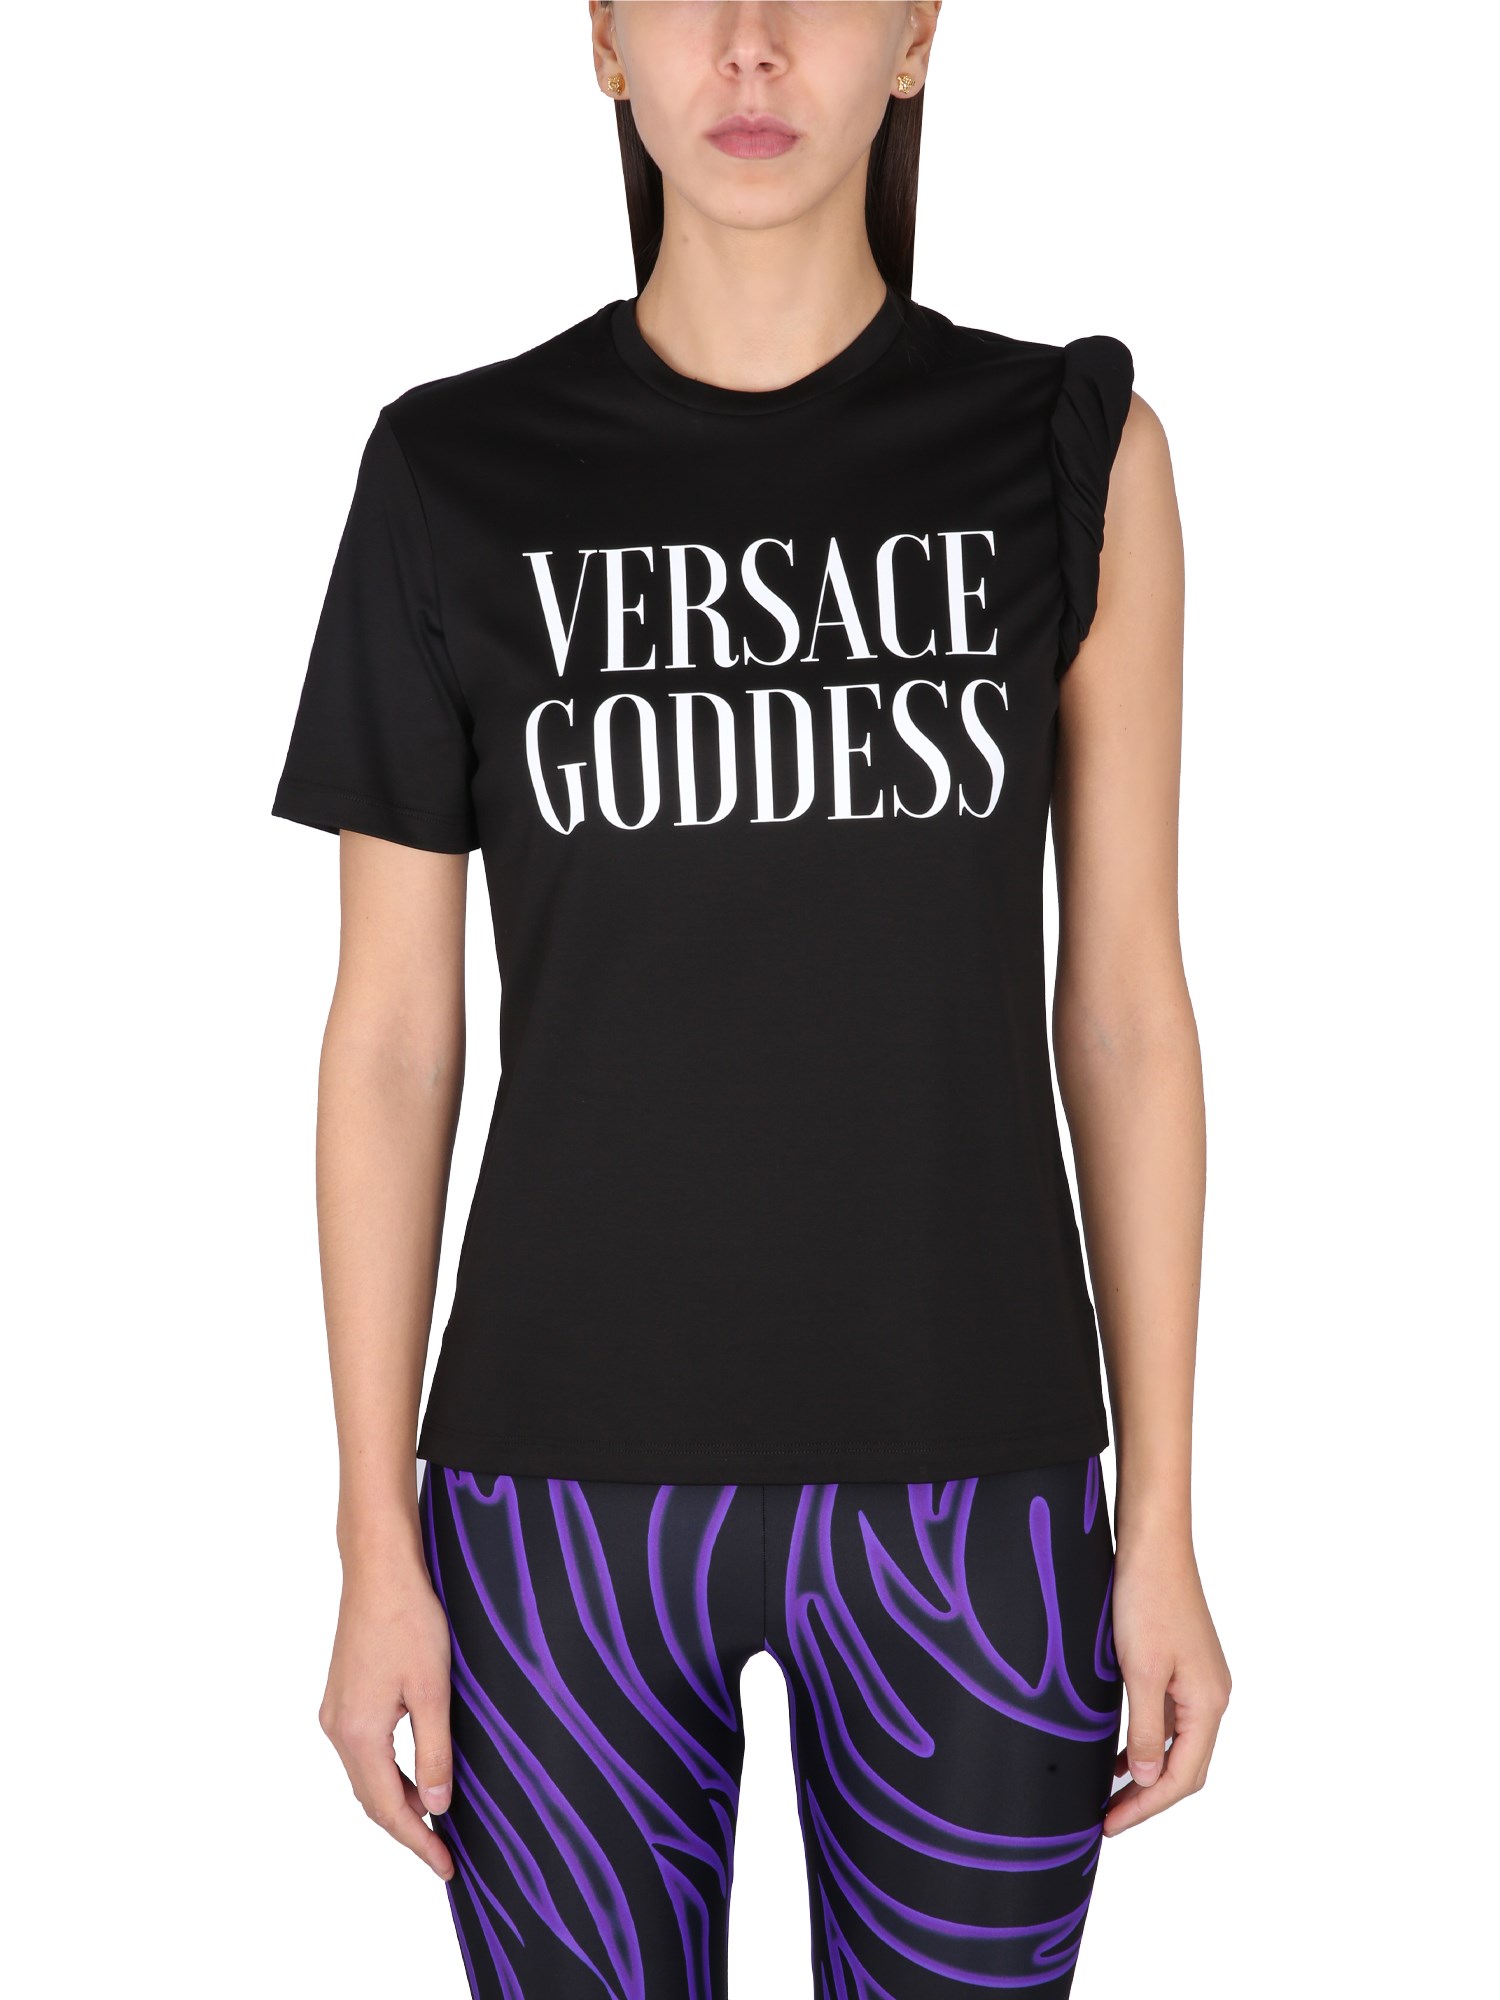 Versace versace versace goddess t-shirt